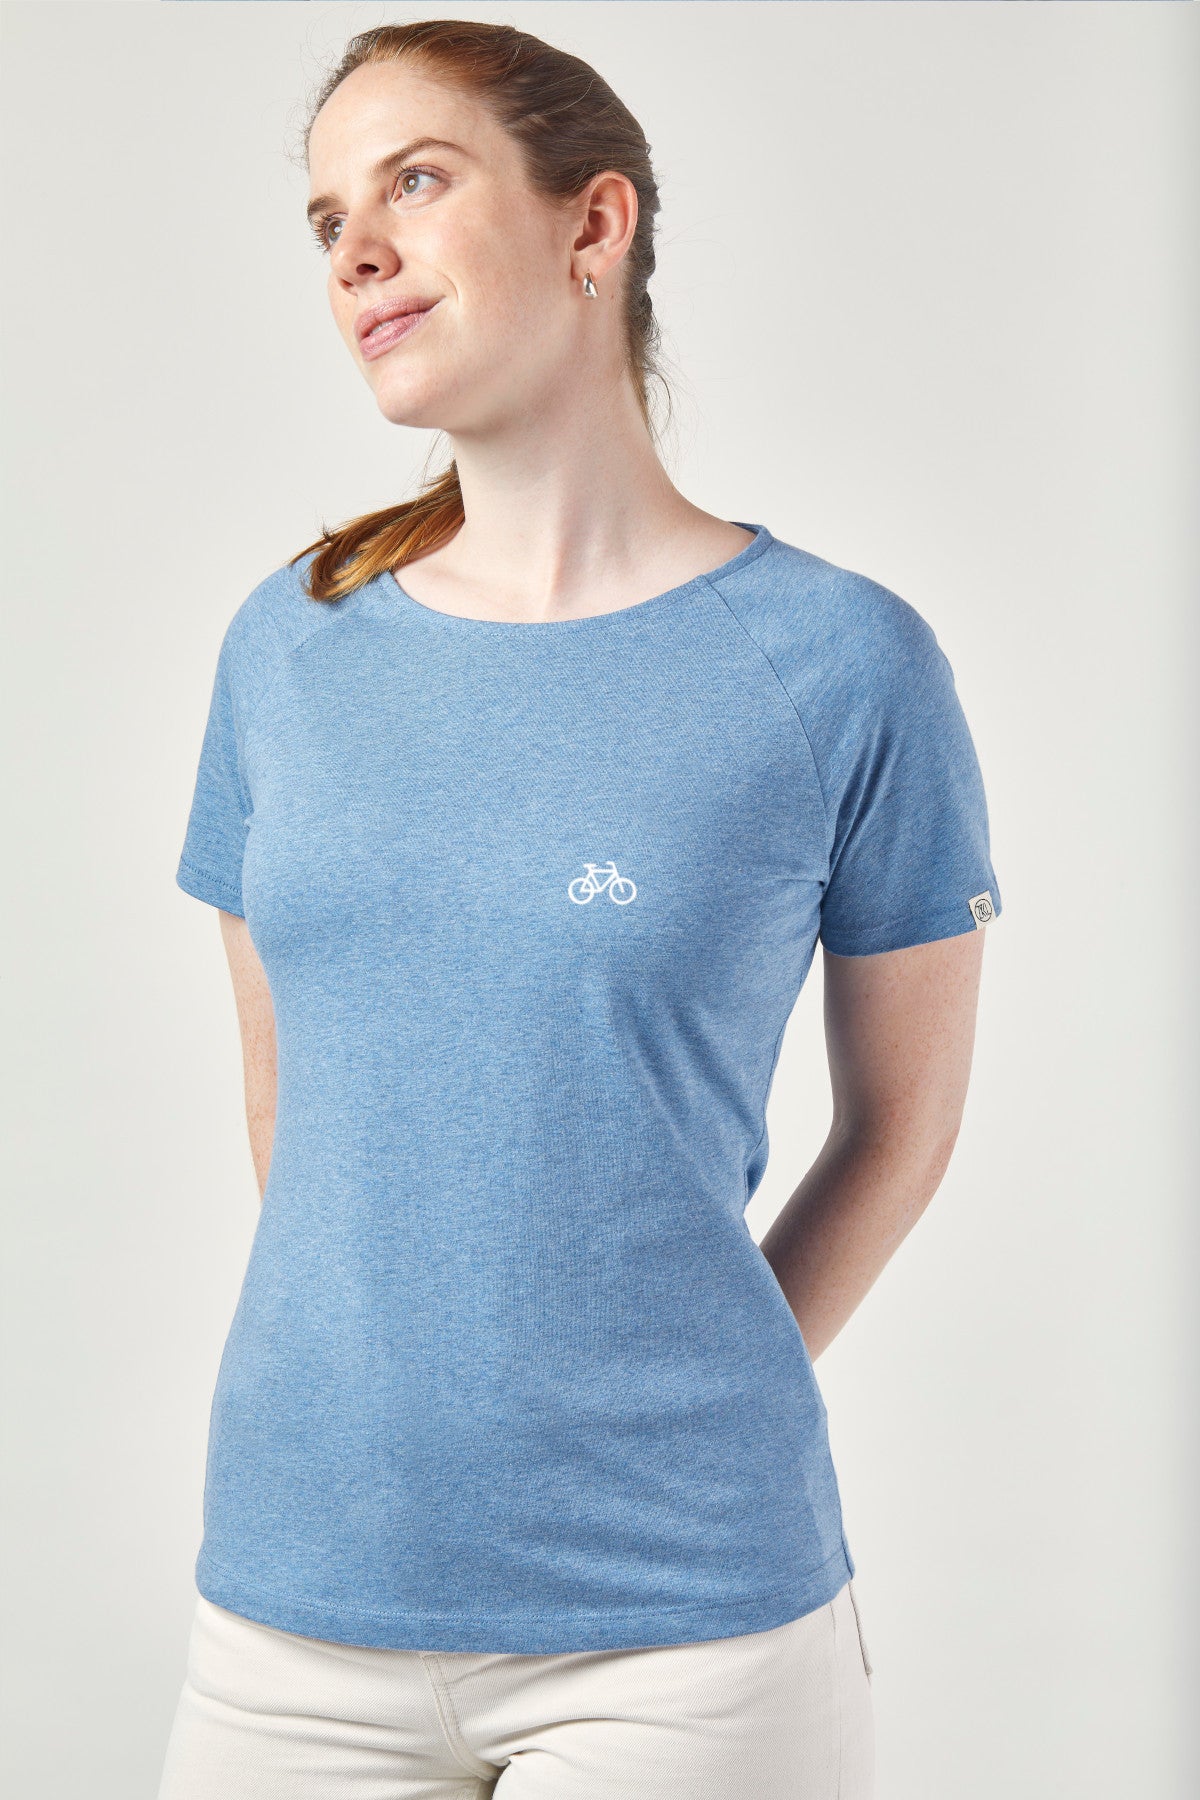 ZRCL Damen-T-Shirt mit Velo-Sujet aus Biobaumwolle